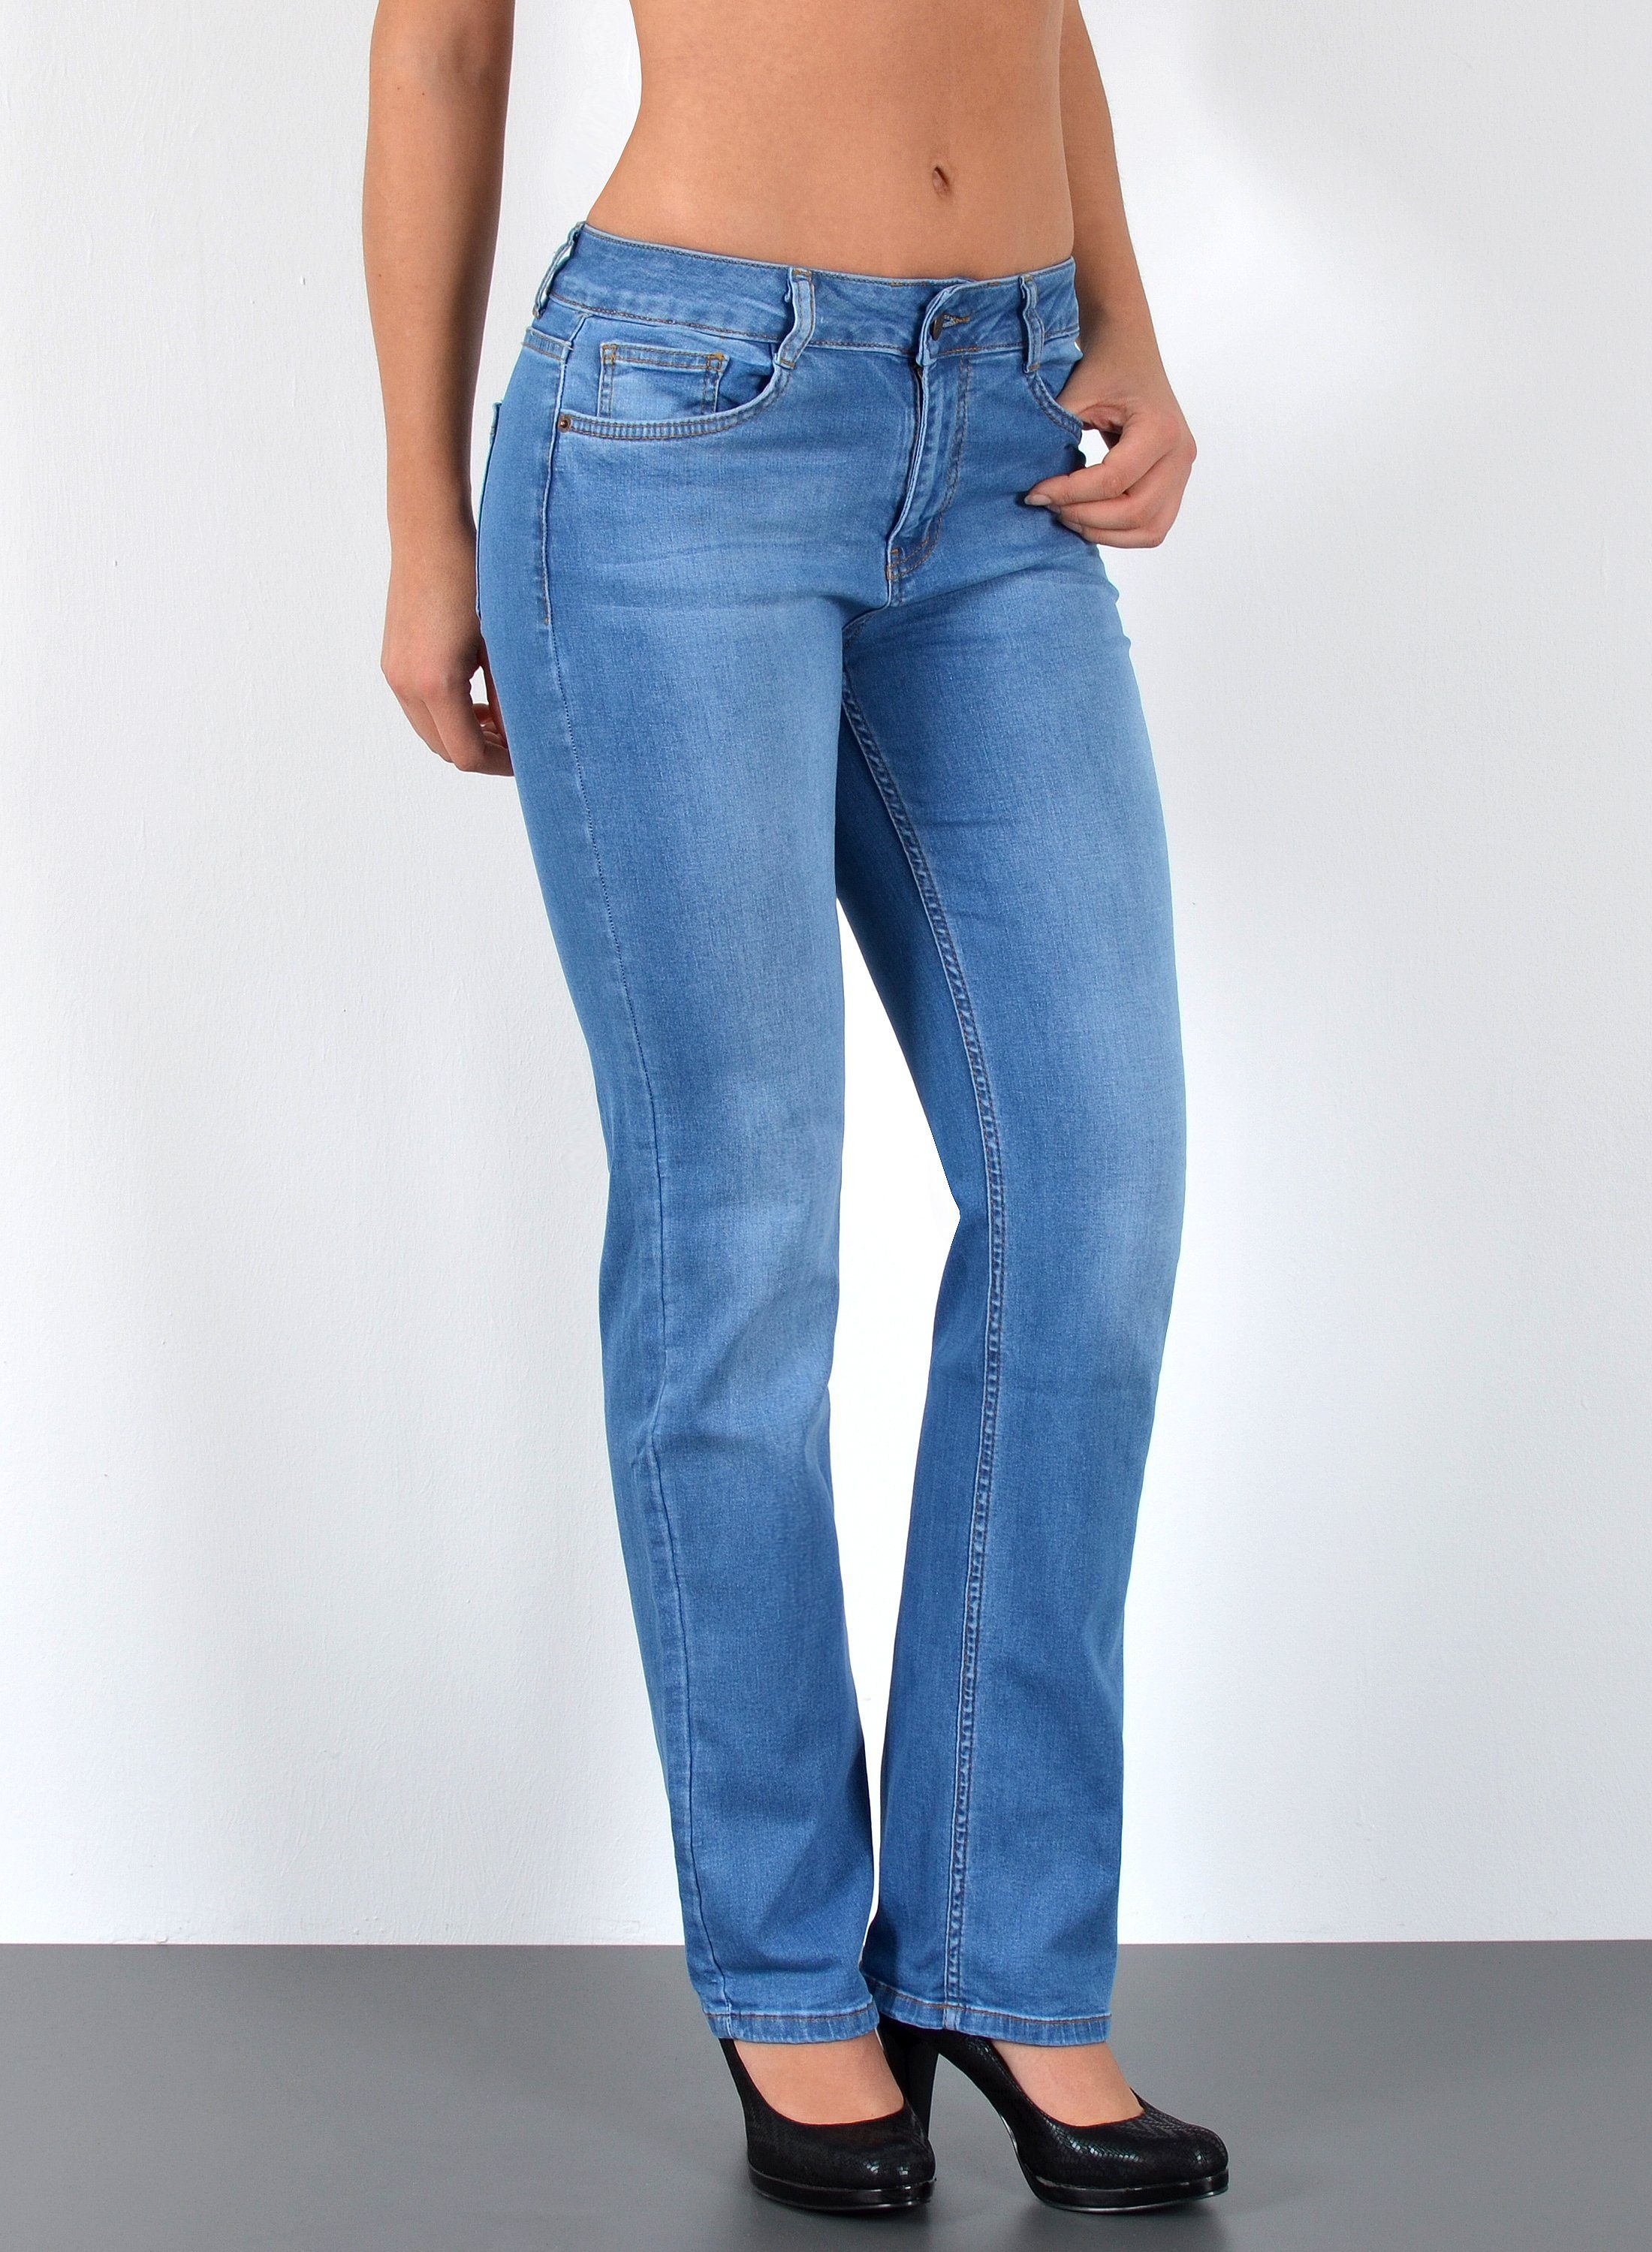 SLVRLAKE Denim Denim Jeanshose in Blau Damen Bekleidung Jeans Jeans mit gerader Passform 